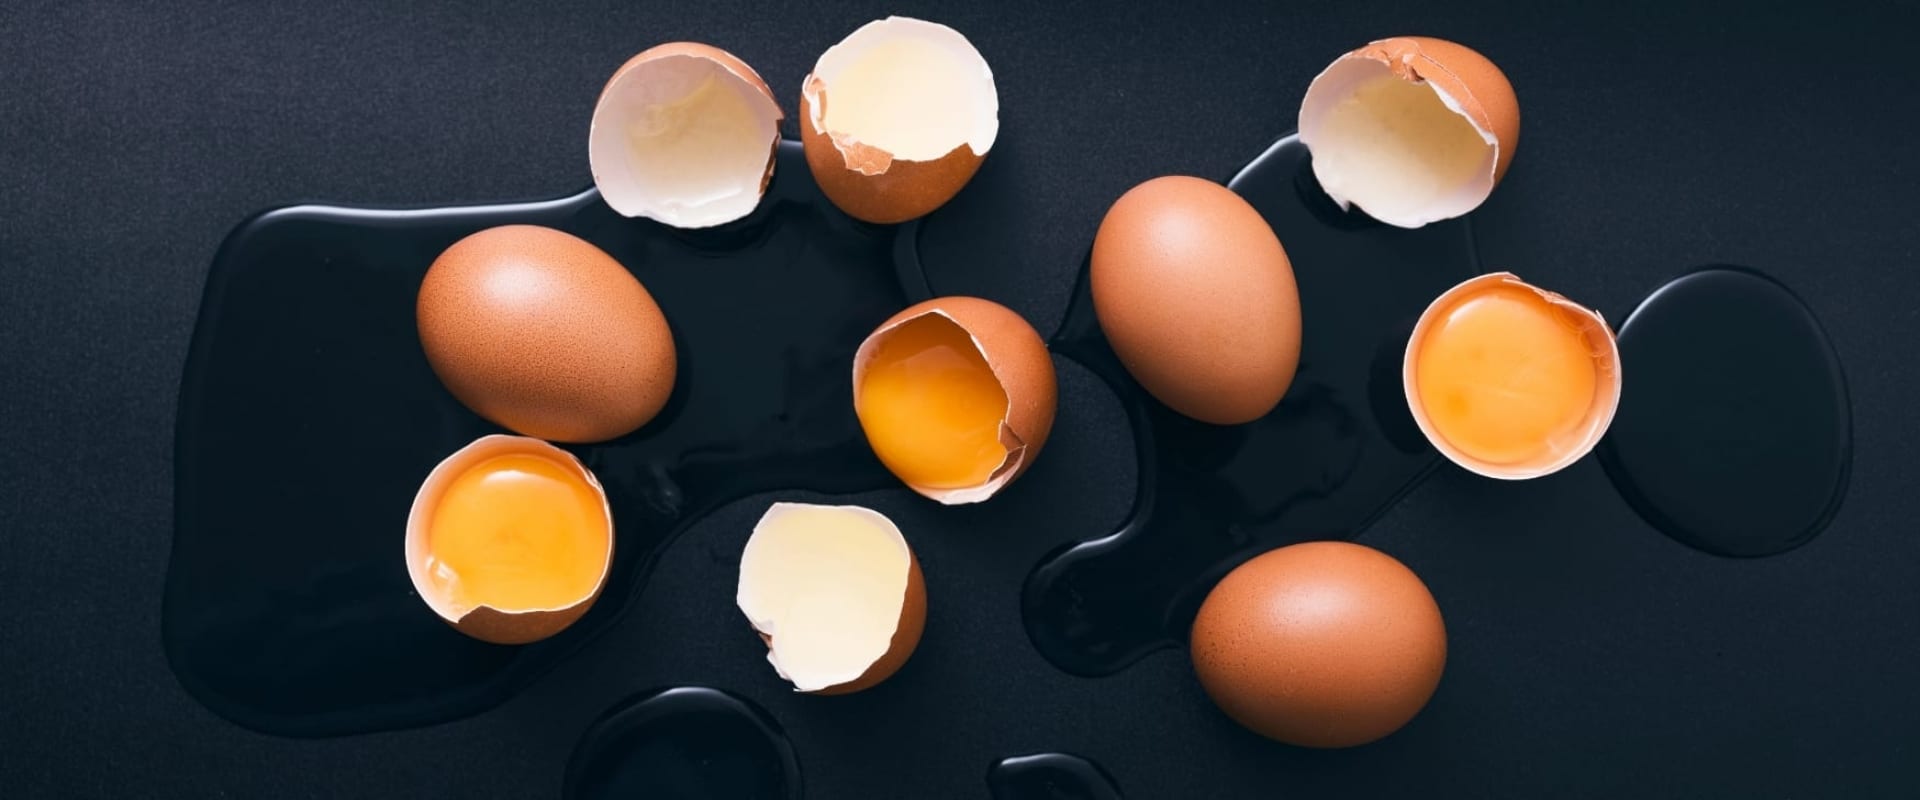 Разбей яйцо 2. Яйцо. Яйца вид сверху. Разбитое яйцо. Яйцо (пищевой продукт).